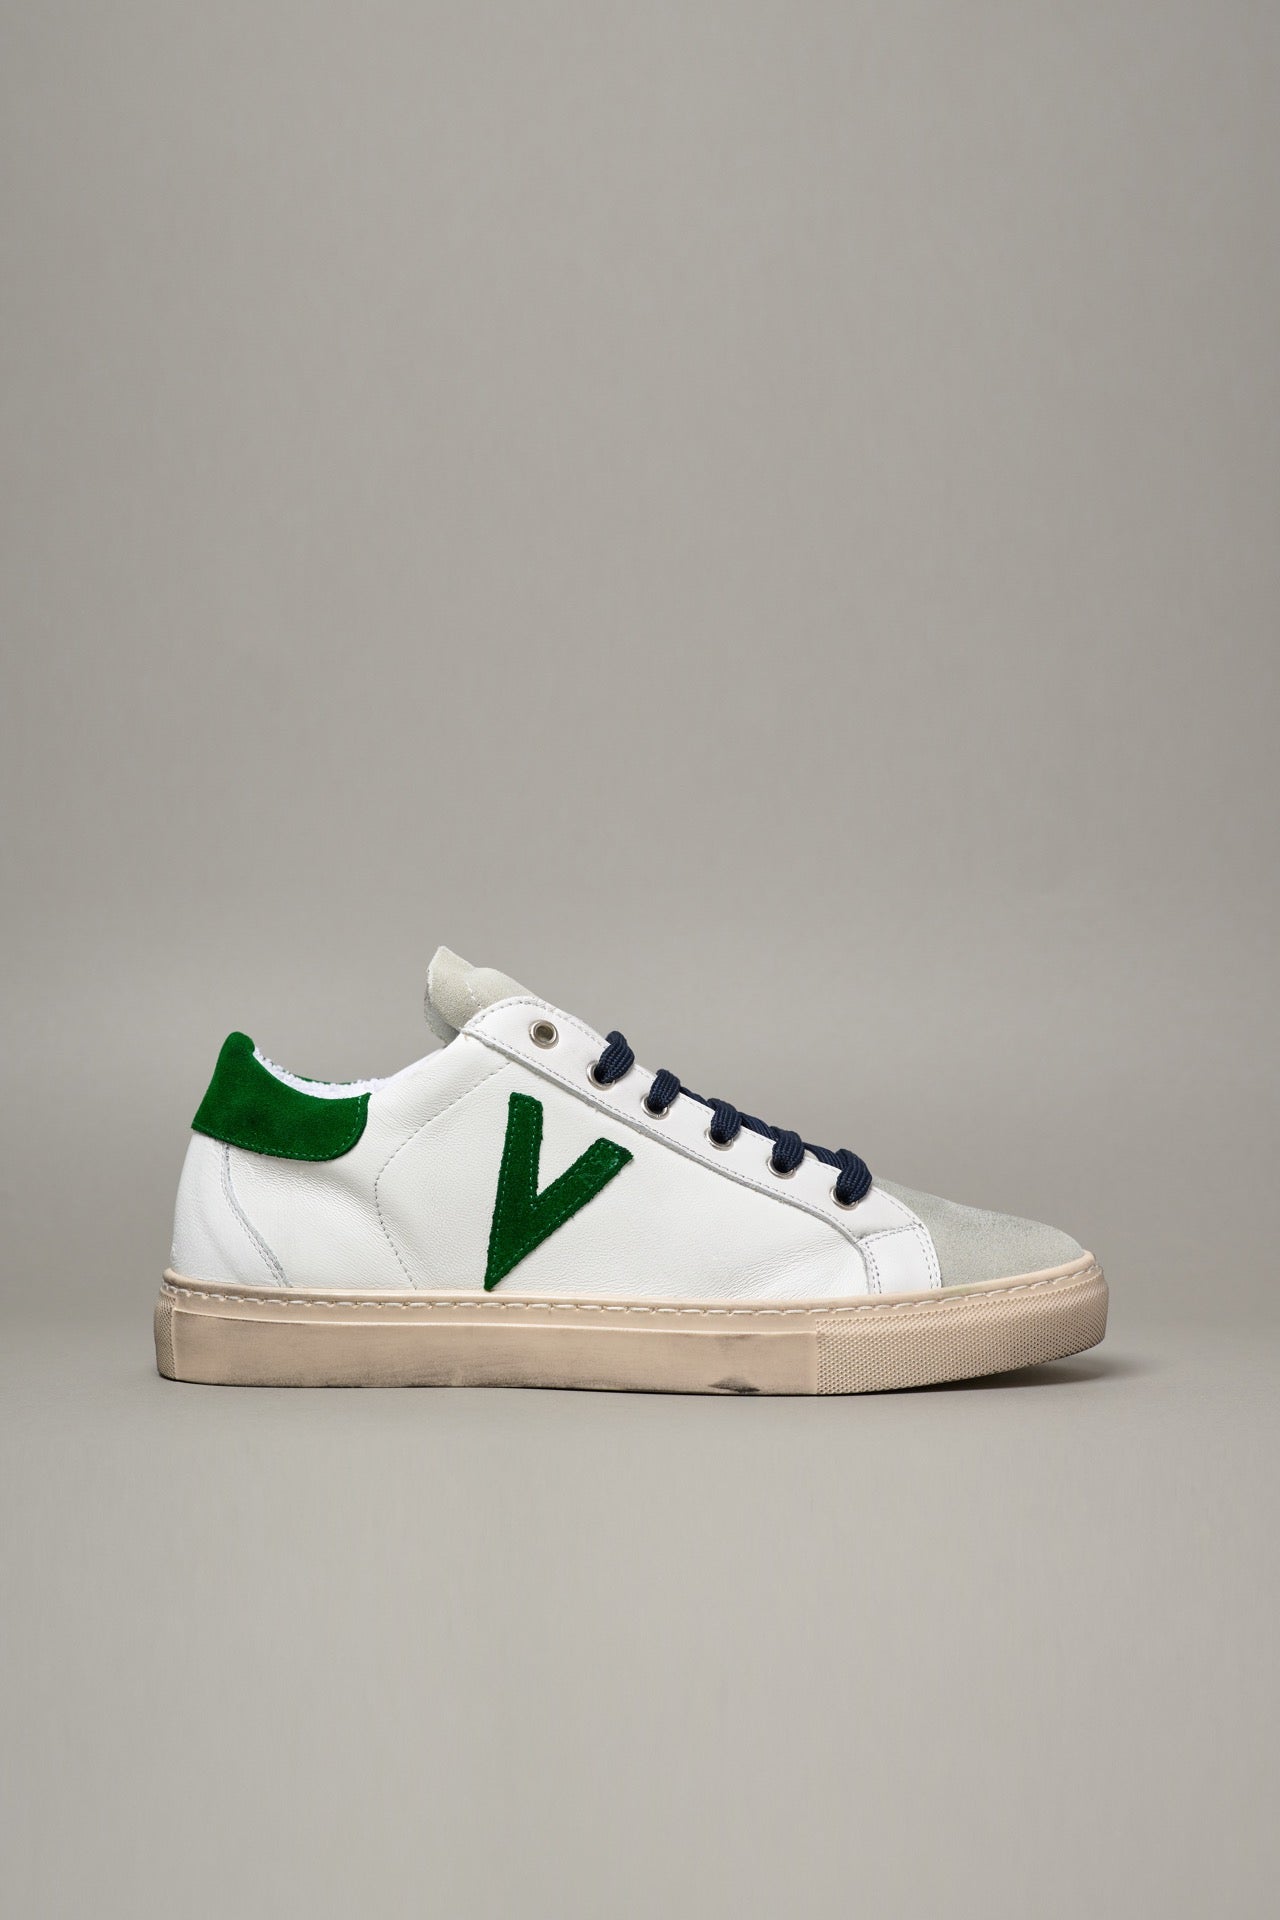 OLYMPIC - Sneakers a suola bassa Bianca con retro e inserto scamosciato Verde e lacci Blu